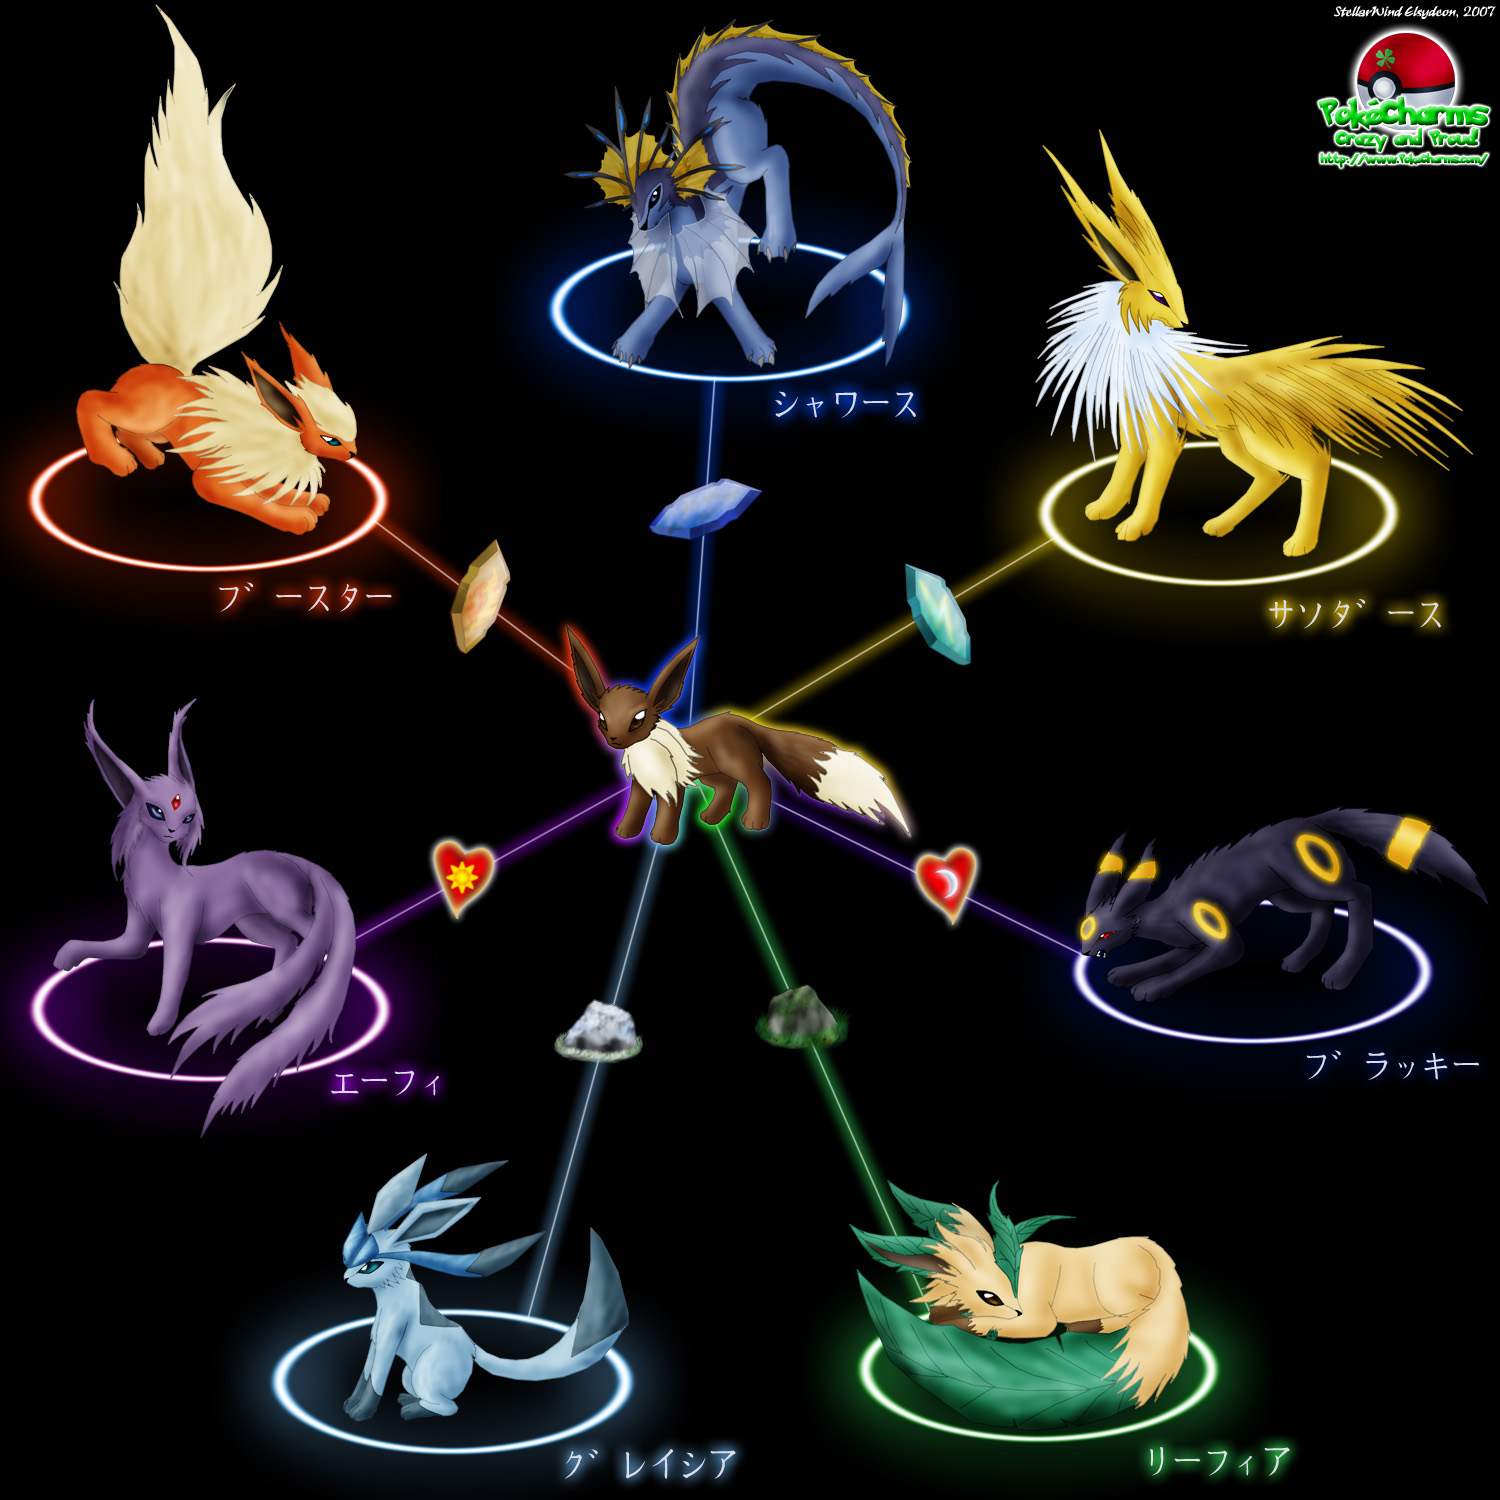 The Pokemon Anime Wallpaper Titled Eevee Evolutions Eeveelutions